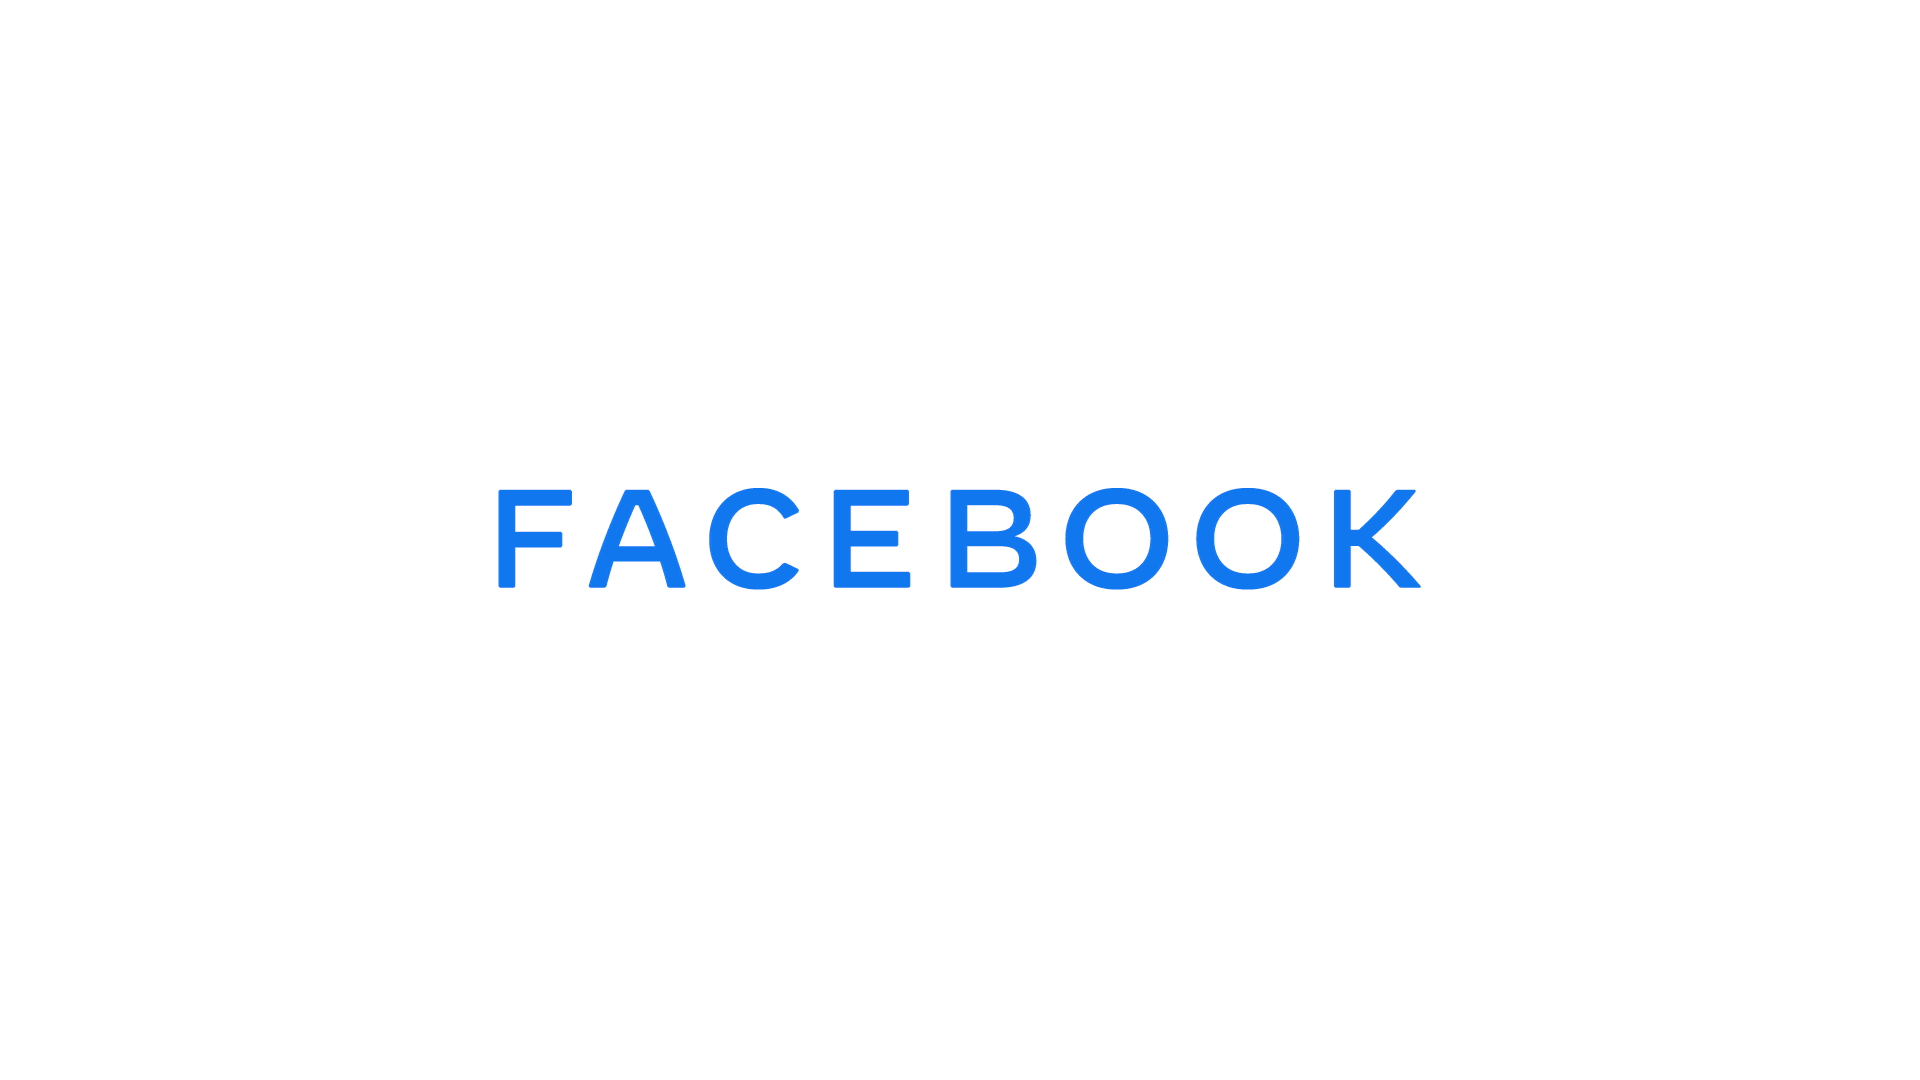 У Фейсбука новый логотип. Он очень минималистичный